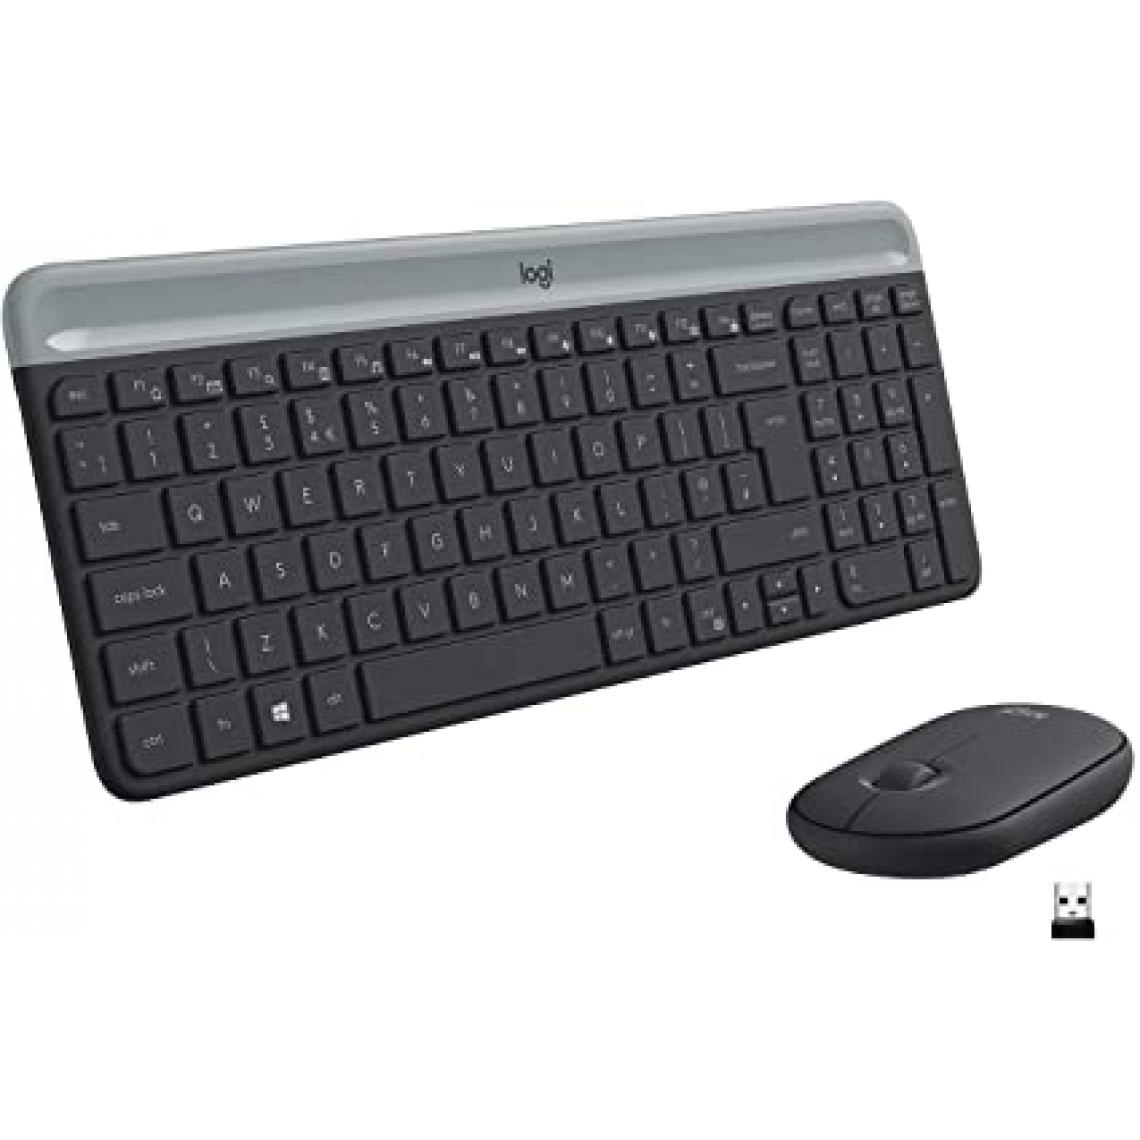 Acer - clavier et souris sans fil combo clavier et souris sans fil combo 100 francais - Clavier